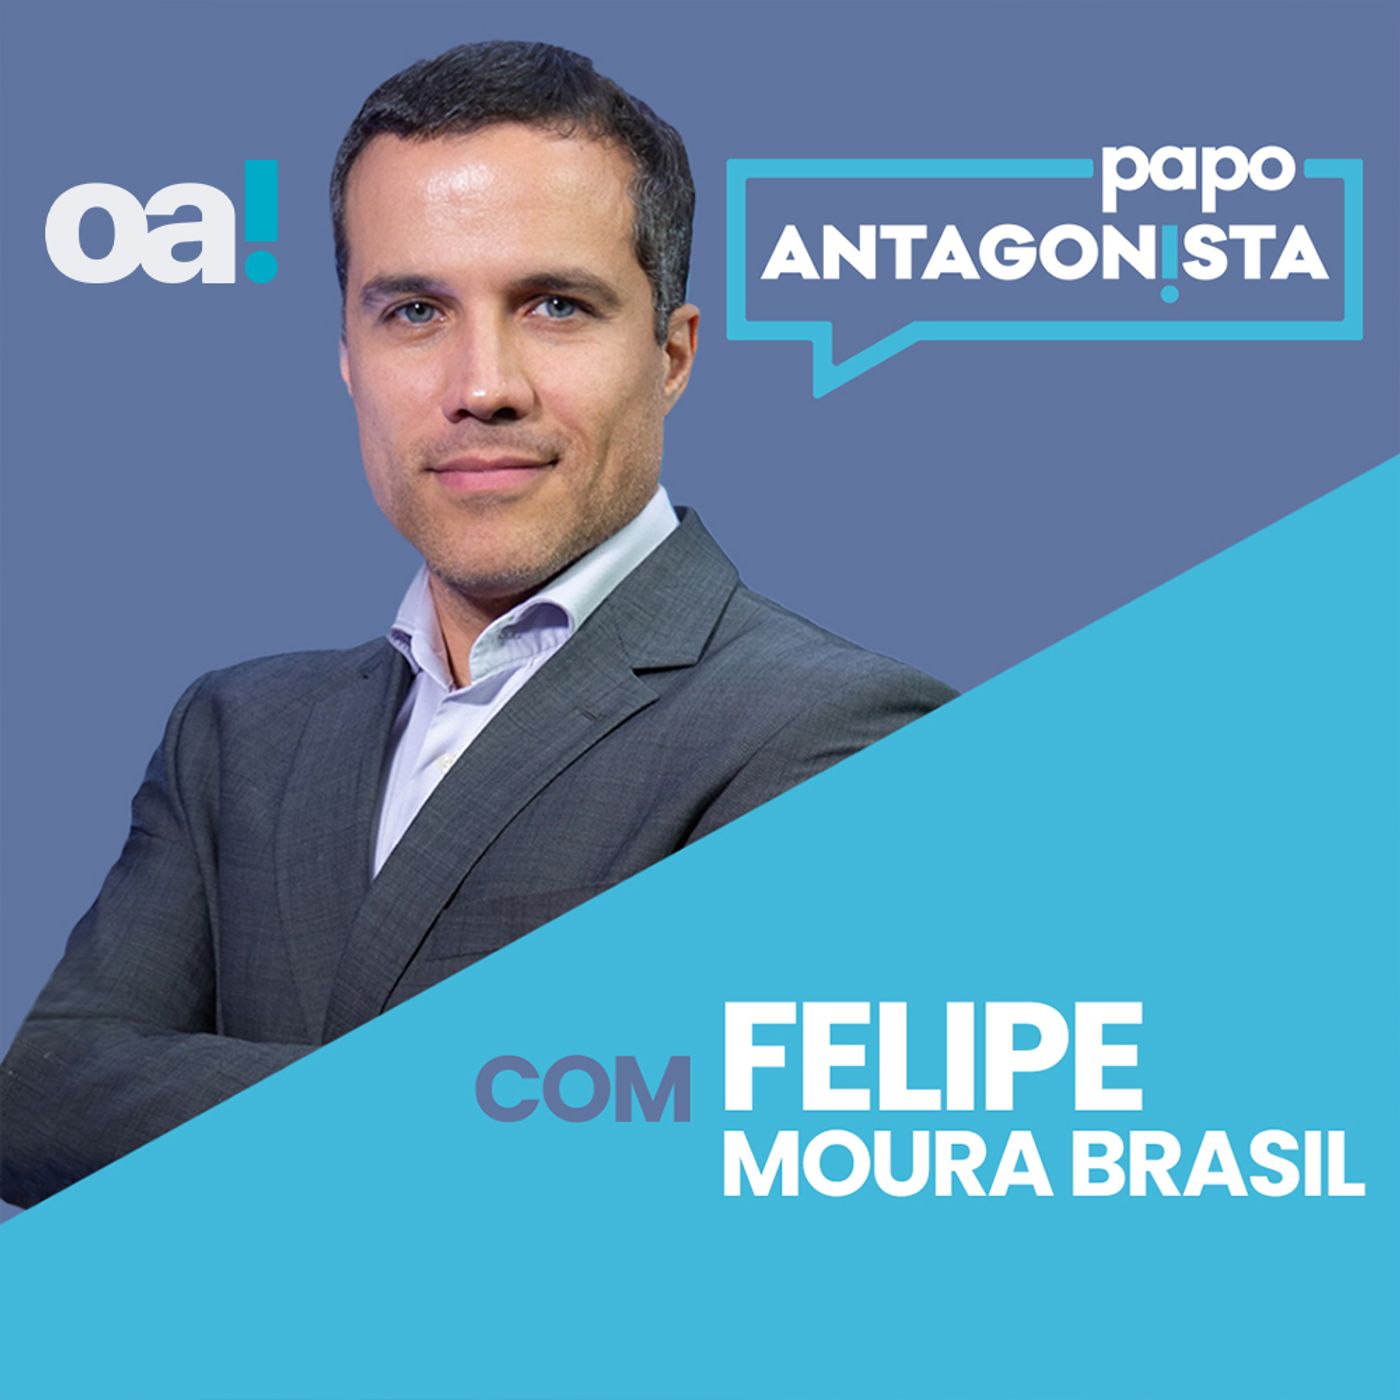 Papo Antagonista com Felipe Moura Brasil - 17/05